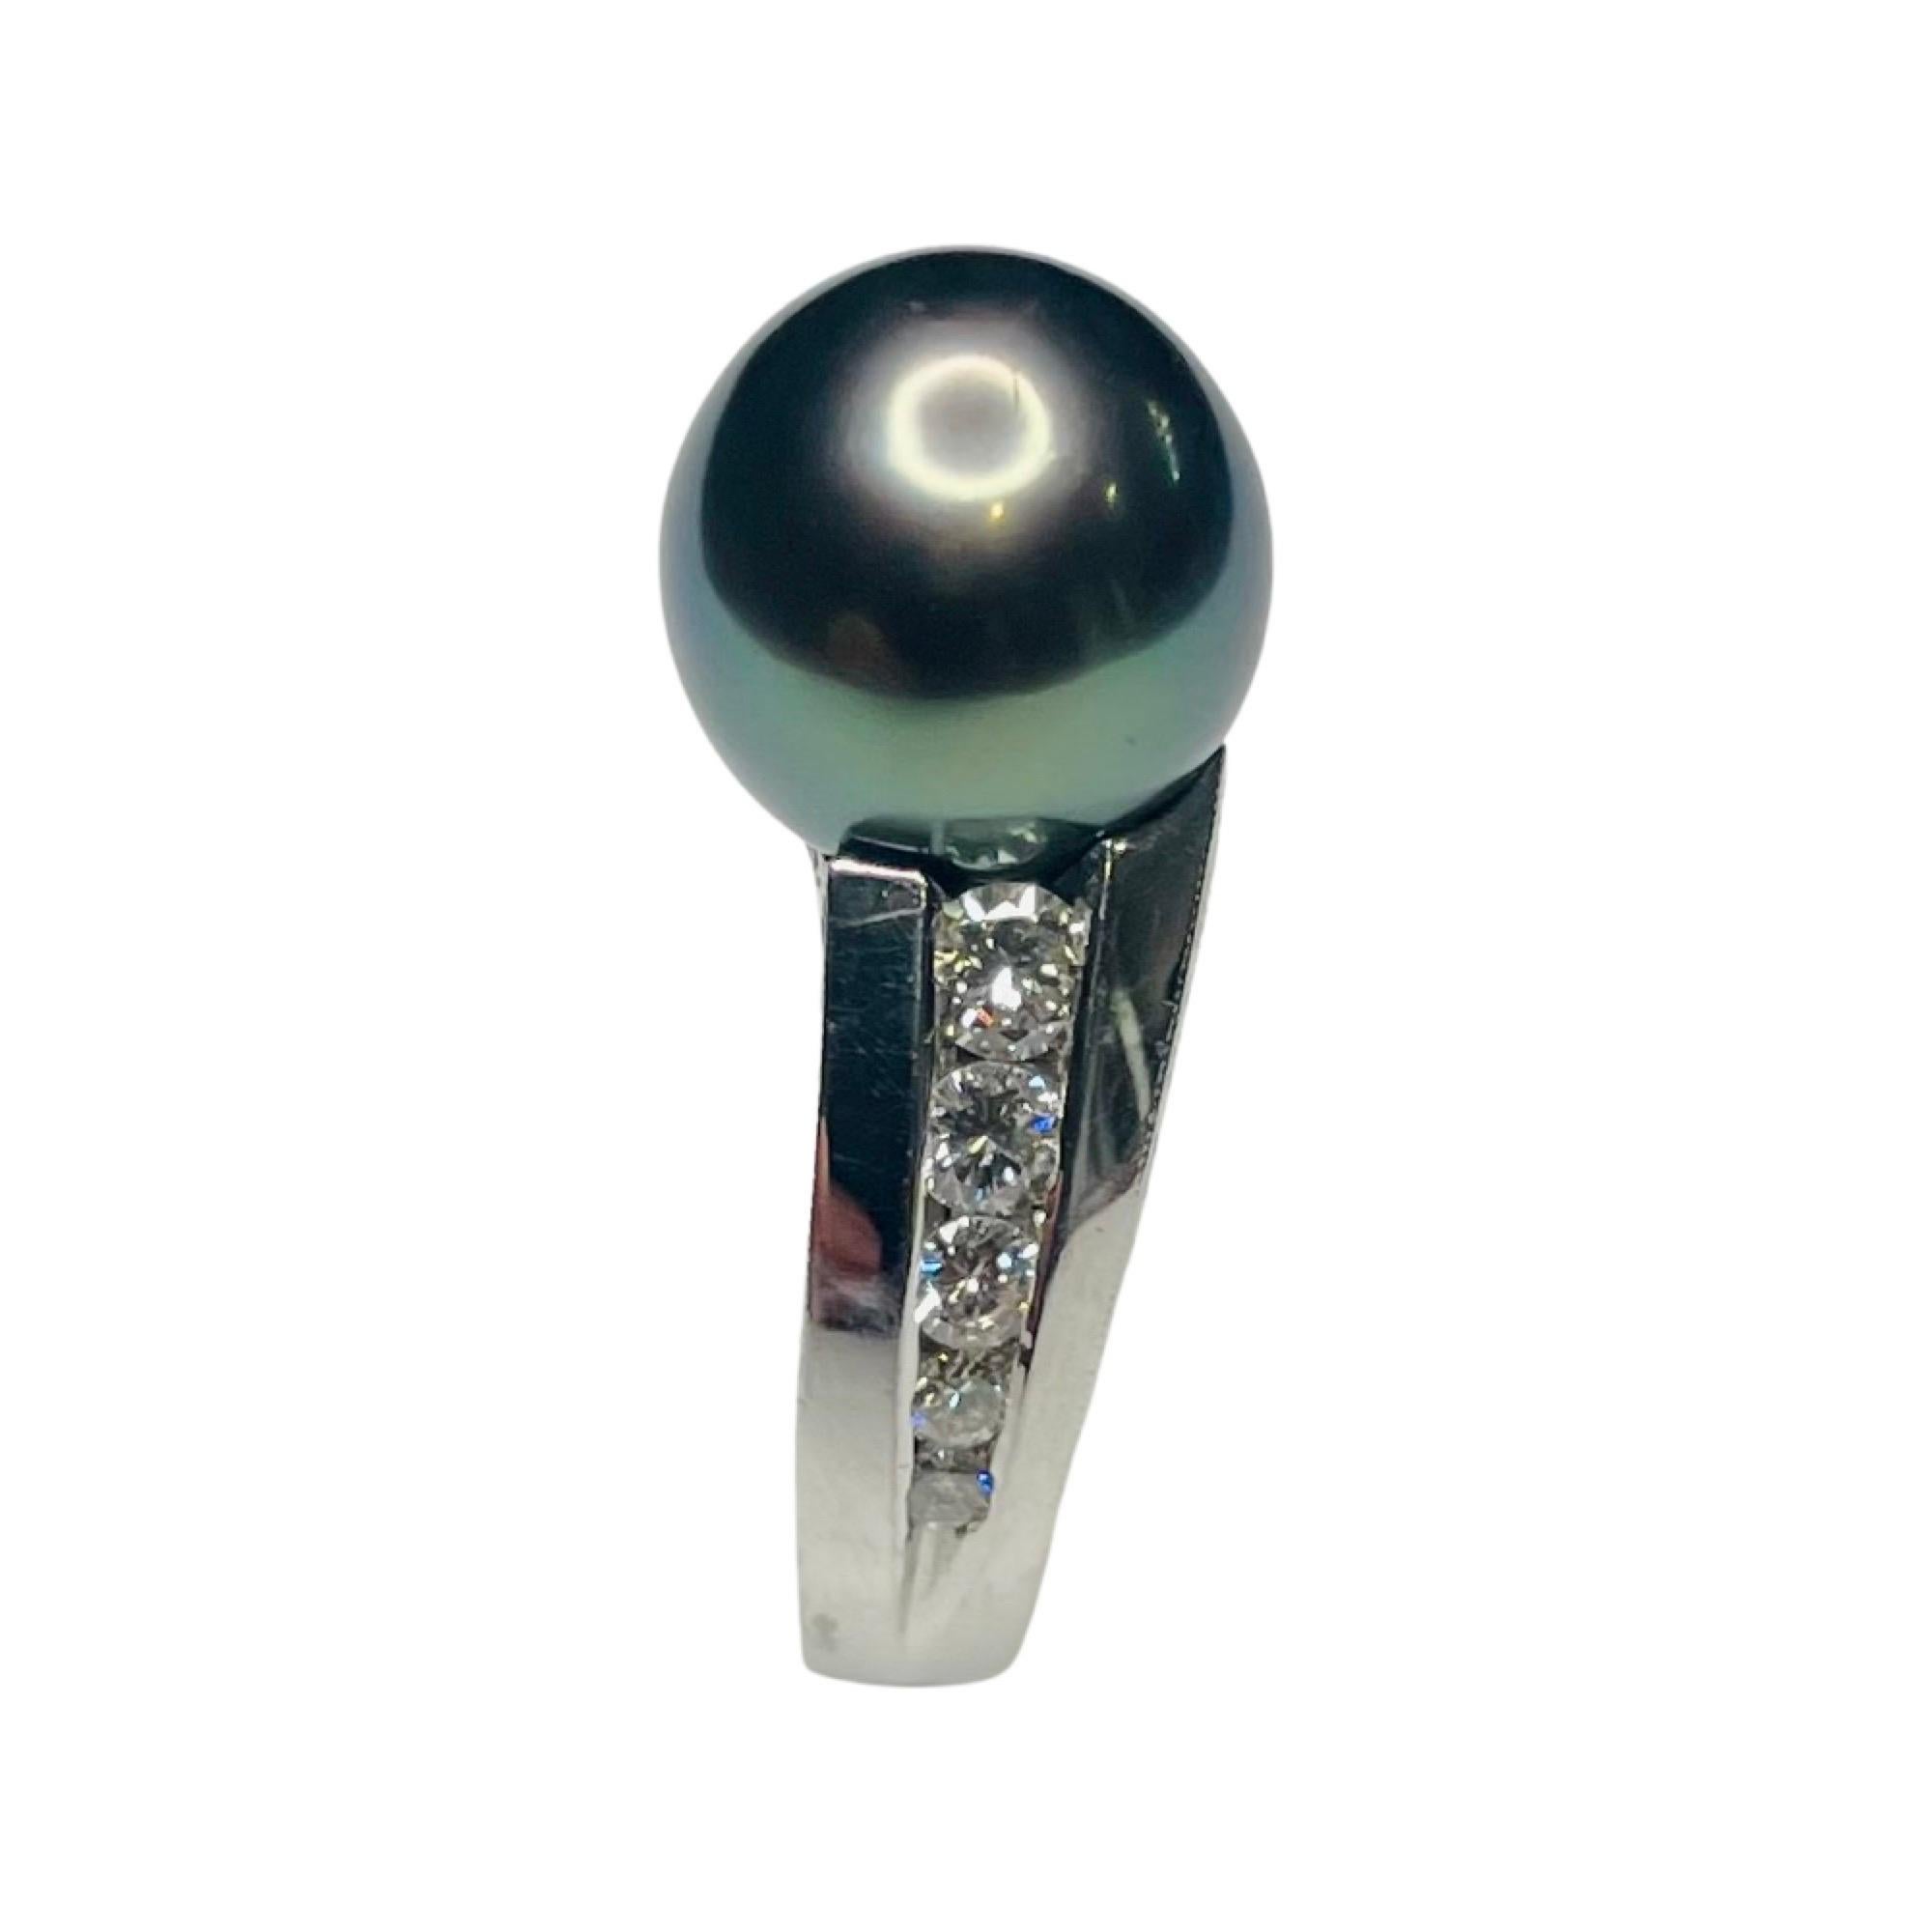 Majestic Art Platin kultiviert natürliche Farbe schwarz Tahiti-Perle Hand graviert Ring. Die schwarze Tahiti-Perle ist 10,6 mm groß.  Die Perle ist rund mit hohem Glanz und Poe-Rava-Oberton. Es sind 10 runde Brillanten im Kanal gefasst, mit einem